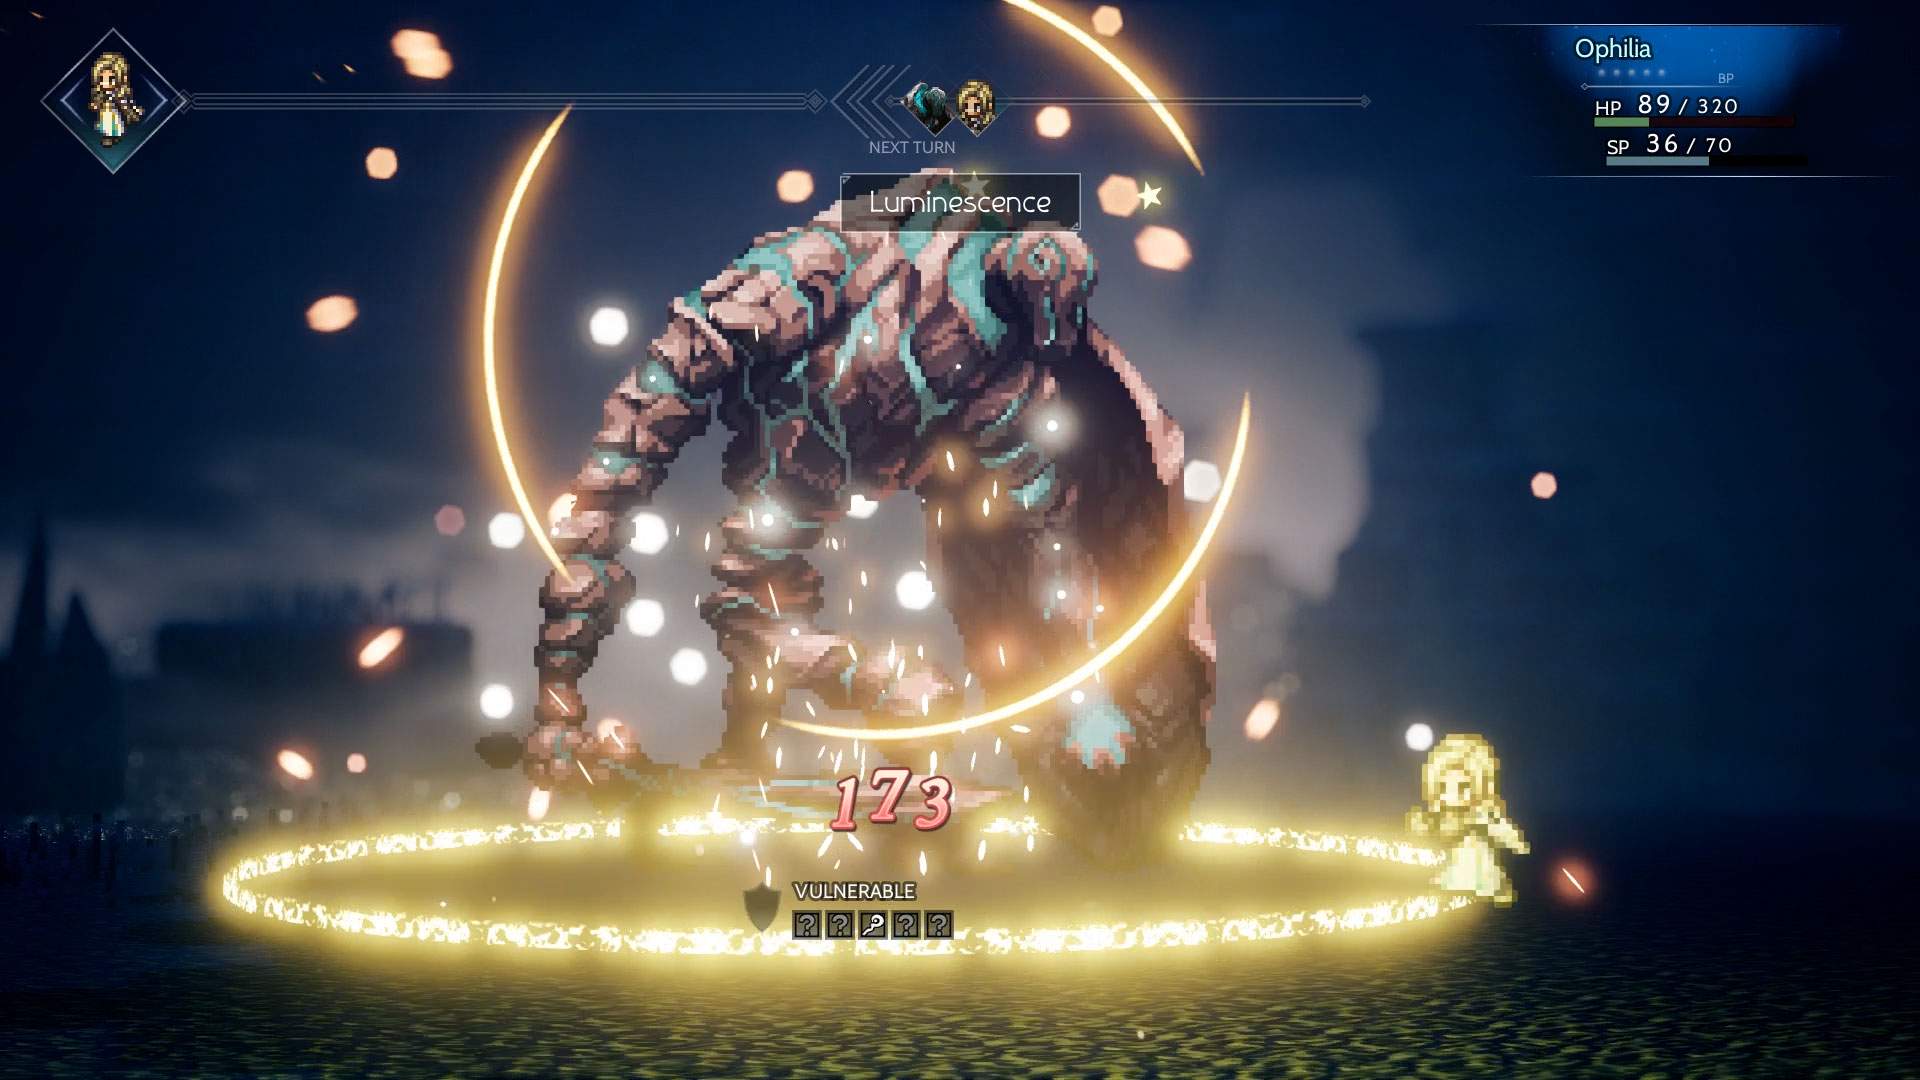 Captura de tela do combate: Ophilia conjurando um ataque contra um grande monstro em um ambiente sinistro.